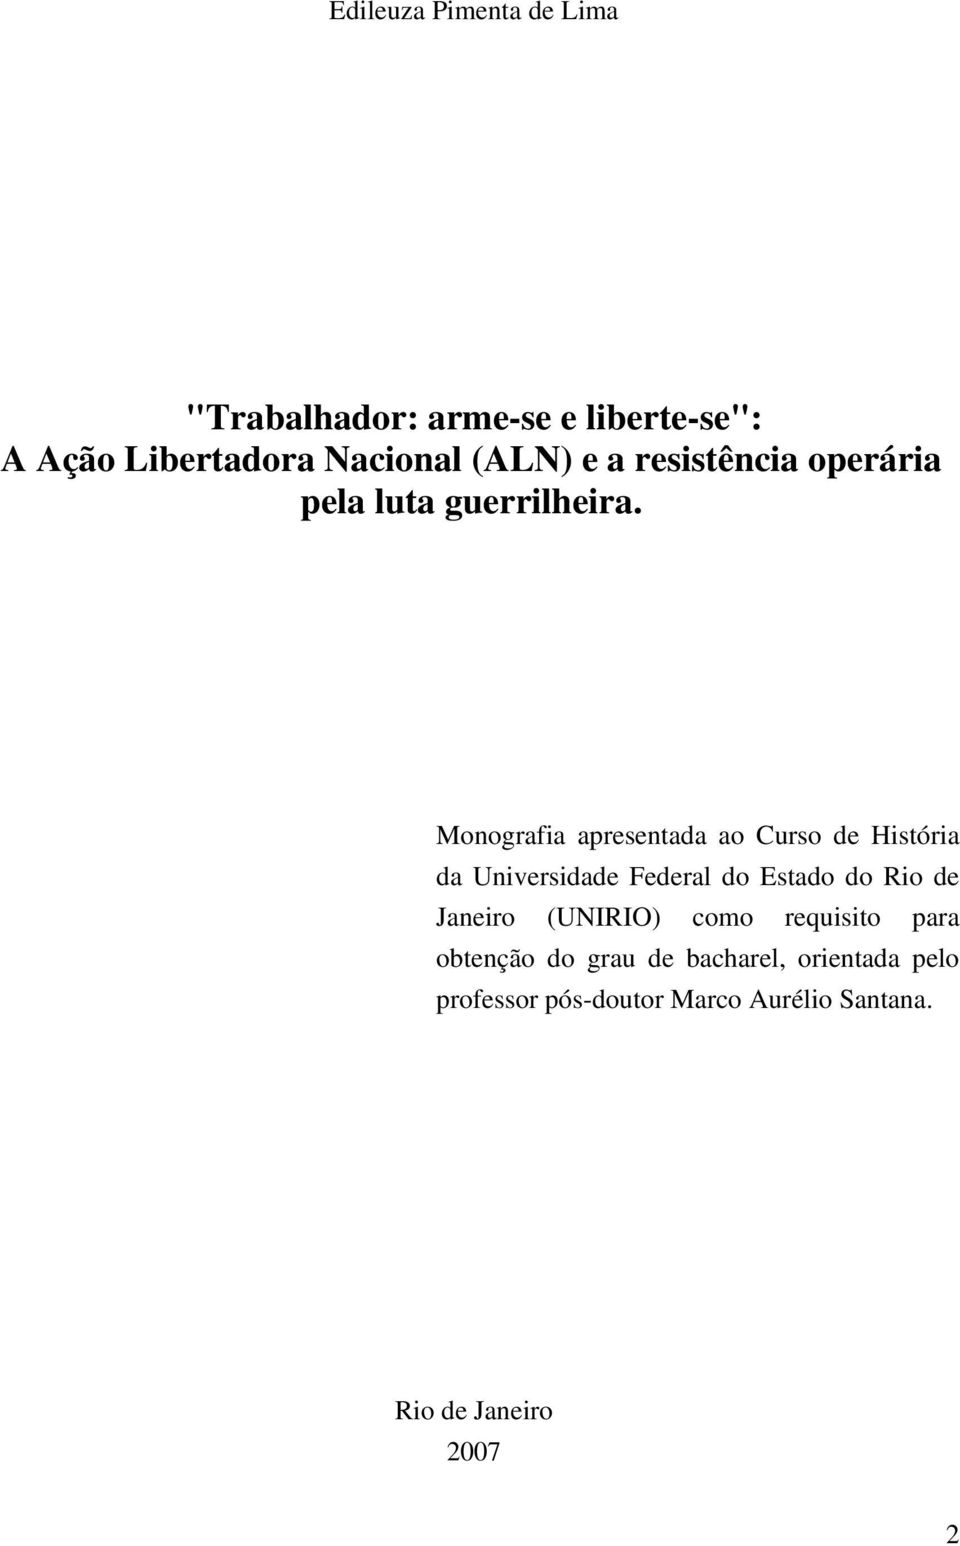 Monografia apresentada ao Curso de História da Universidade Federal do Estado do Rio de